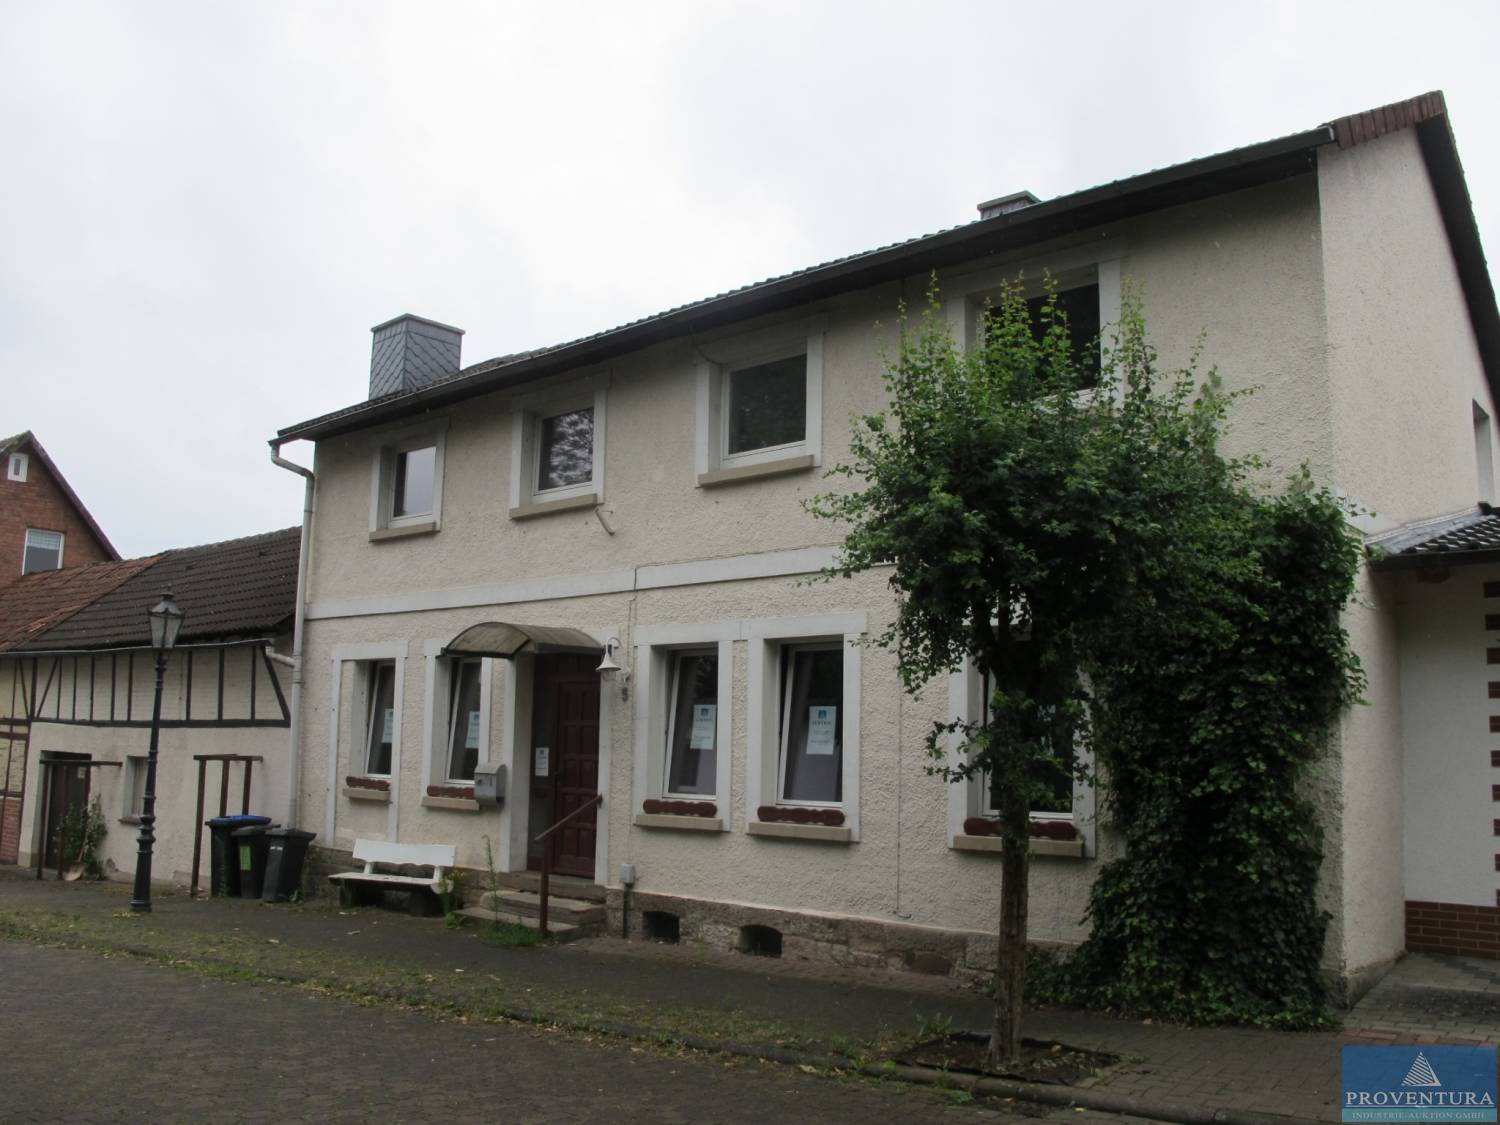 Grundstücksauktion Einfamilienhaus in Bodenfelde